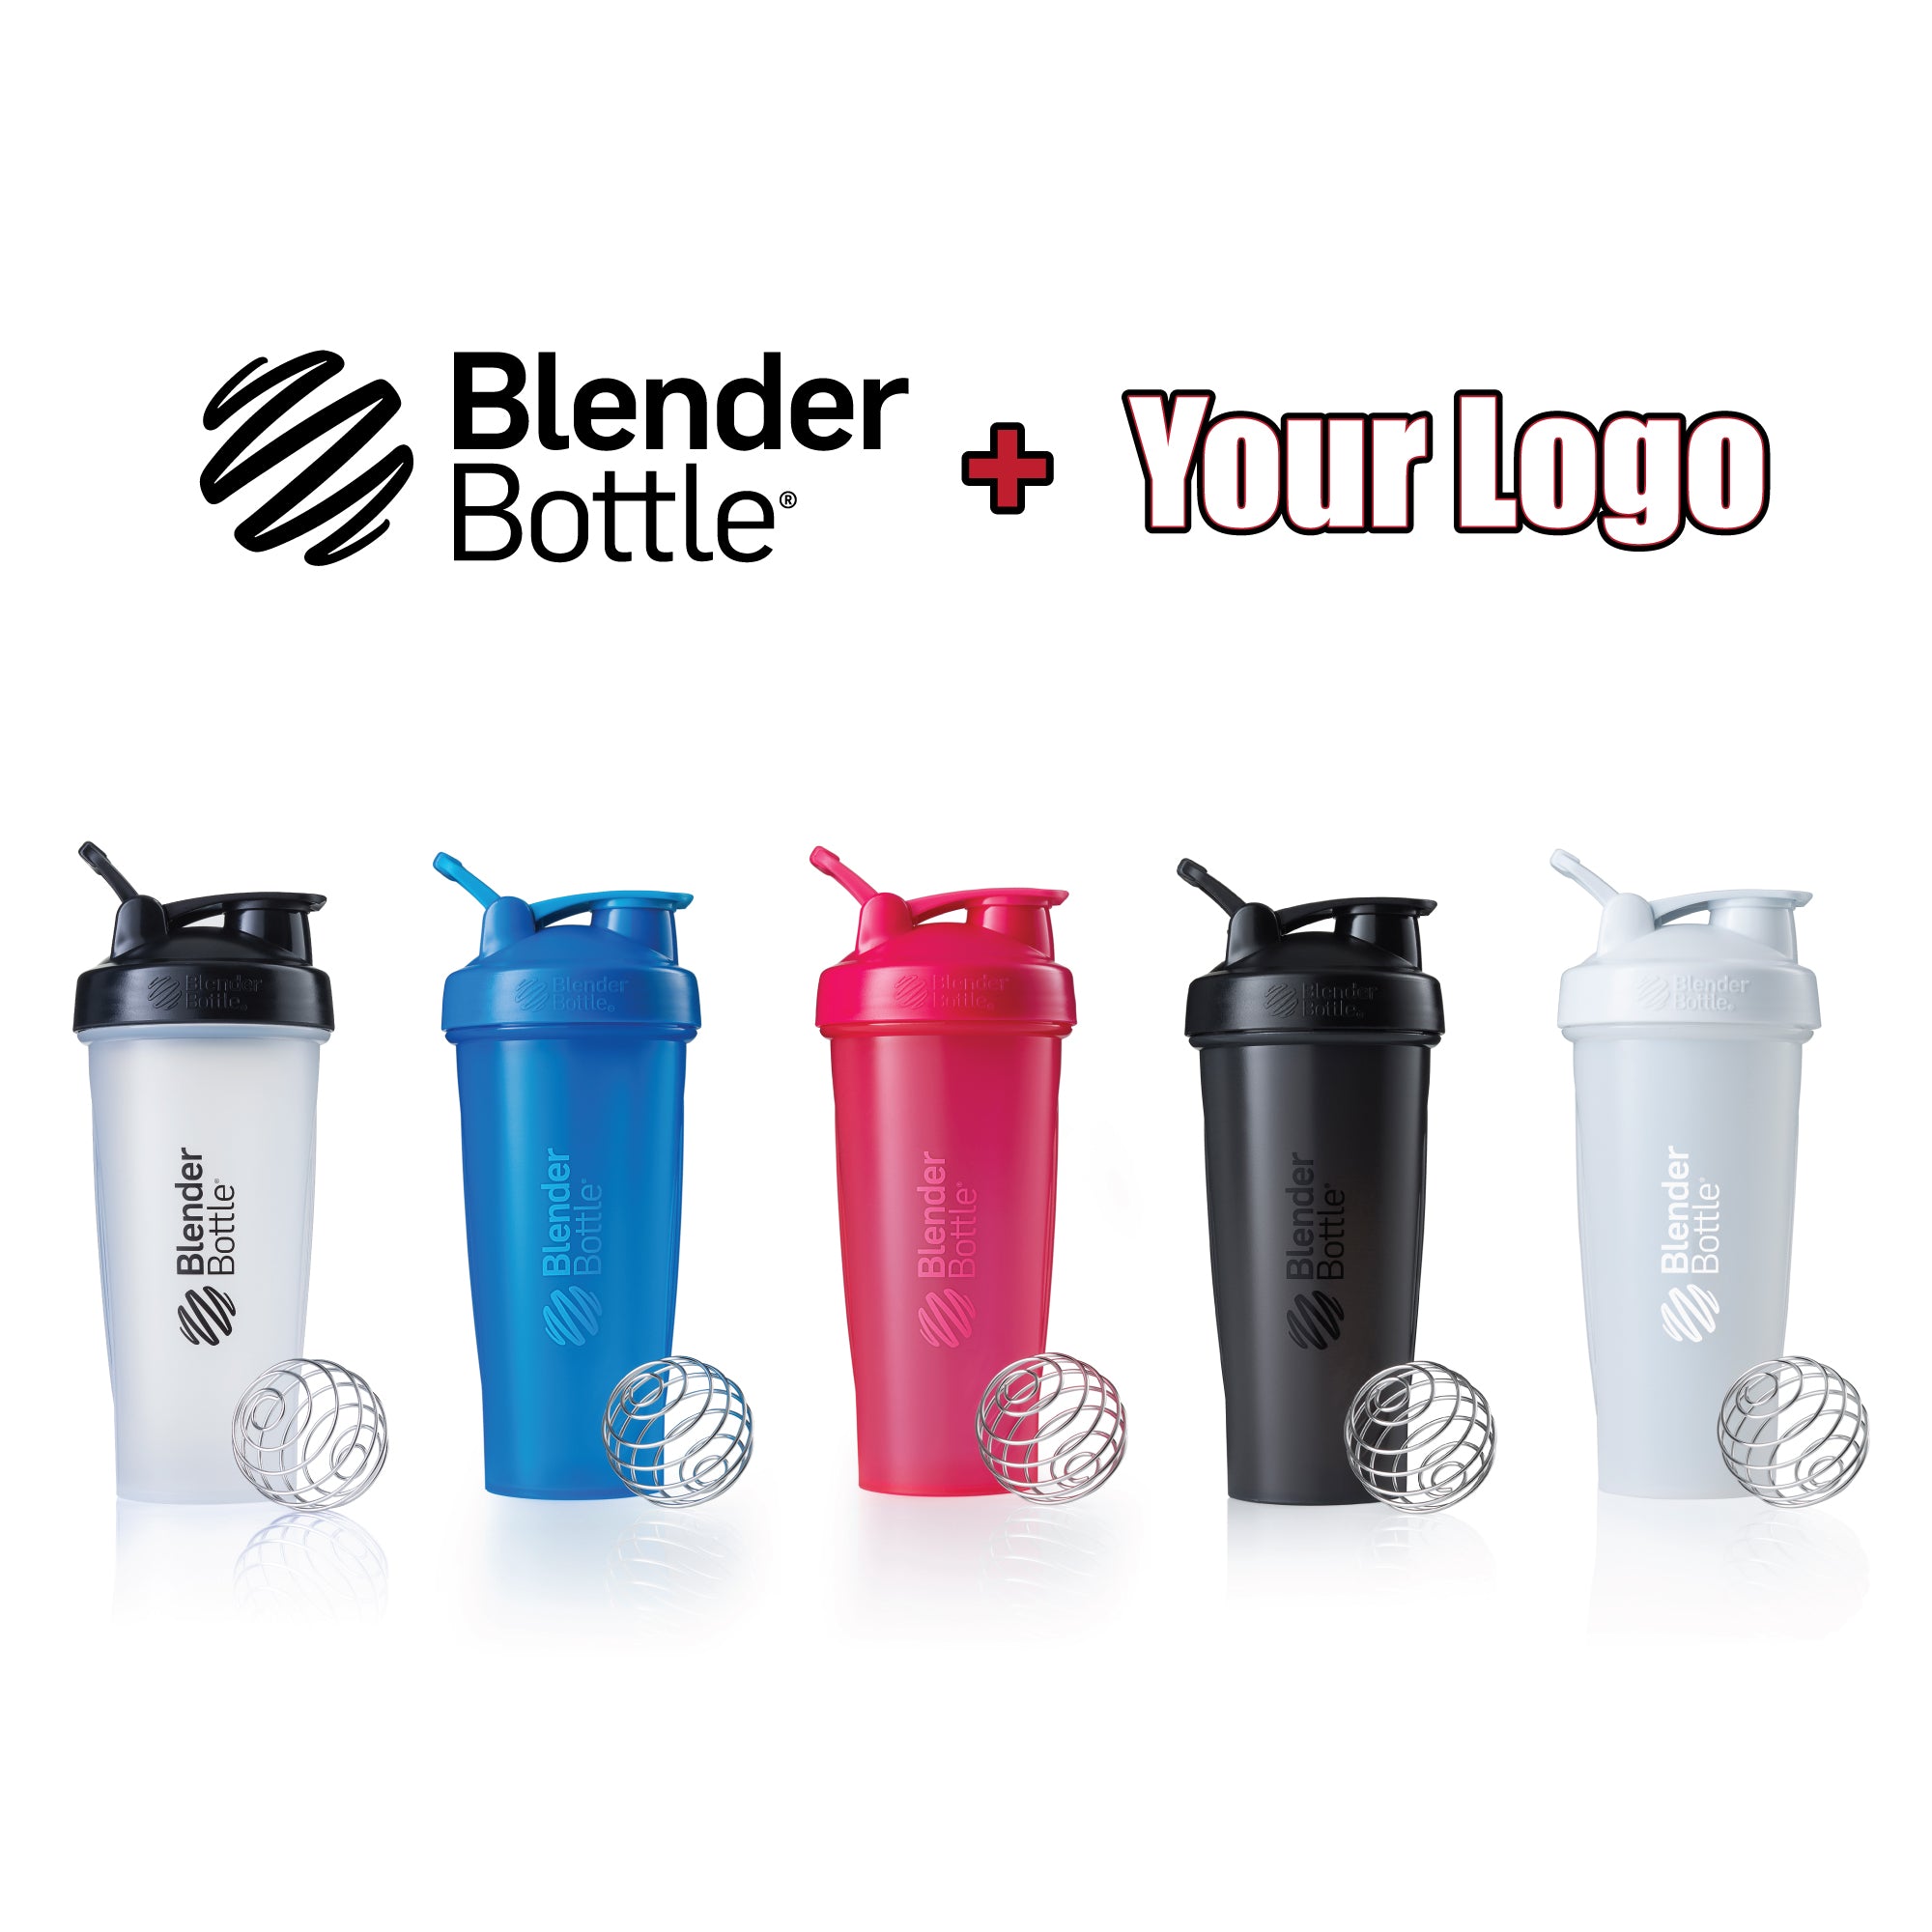 Branded Blender Bottle Classic